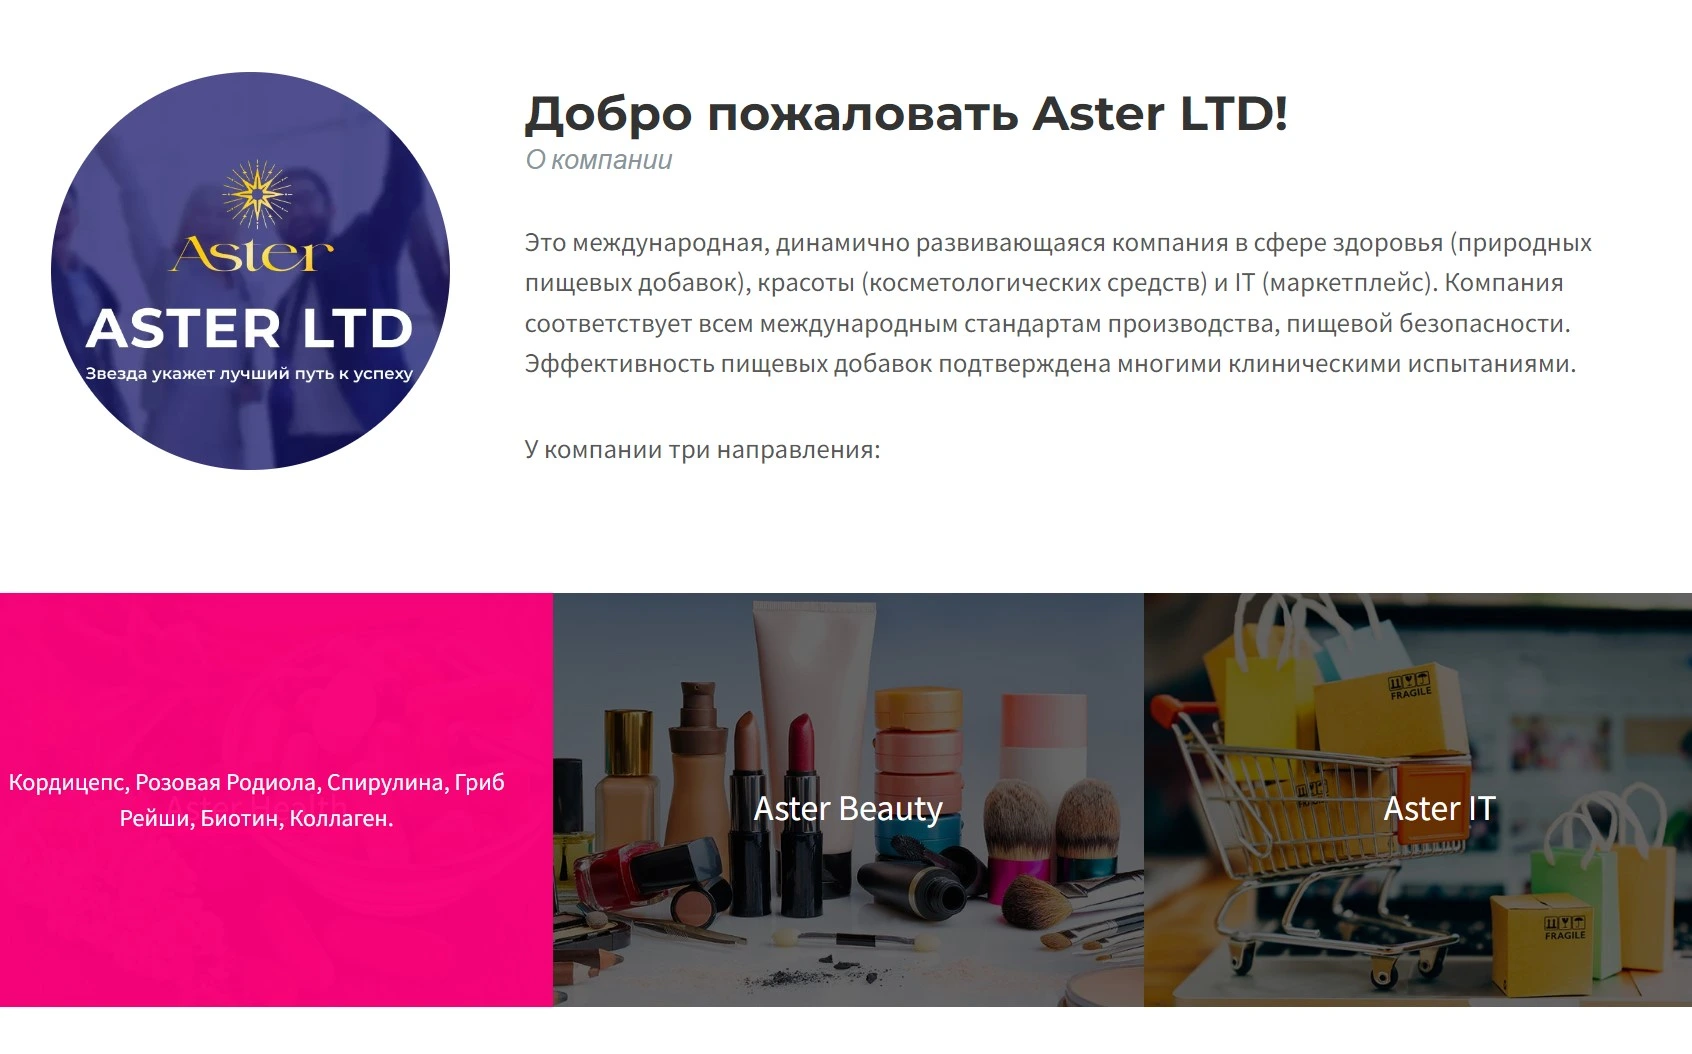 Описание компании Aster Ltd на официальном сайте